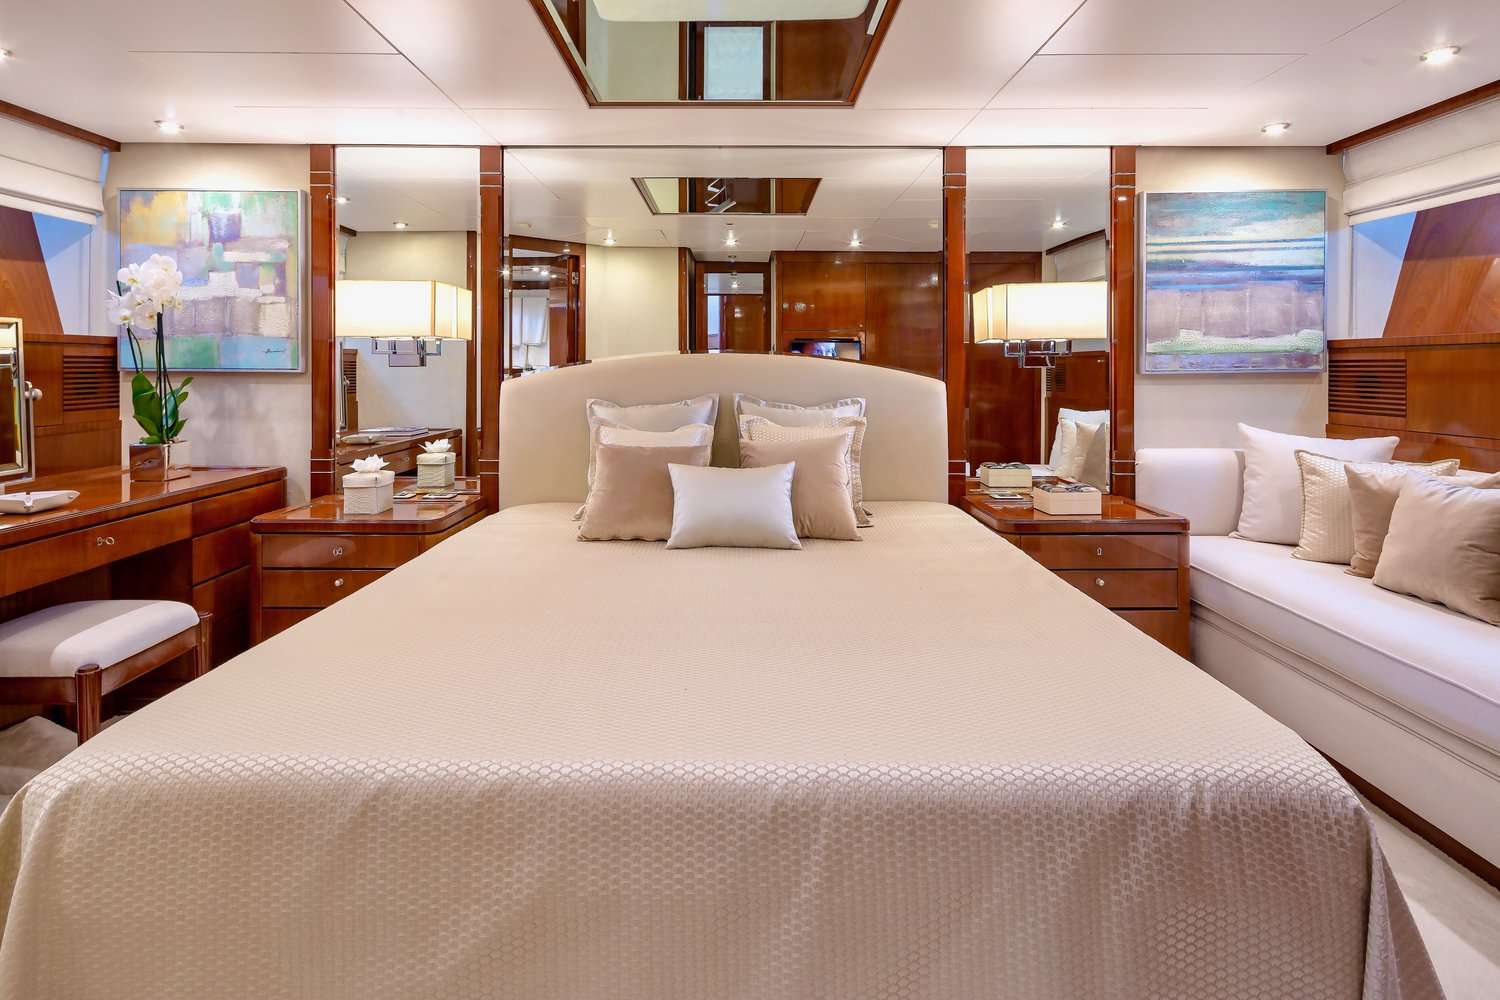 grace - Yacht Charter Antalya & Boat hire in Greece & Turkey 4